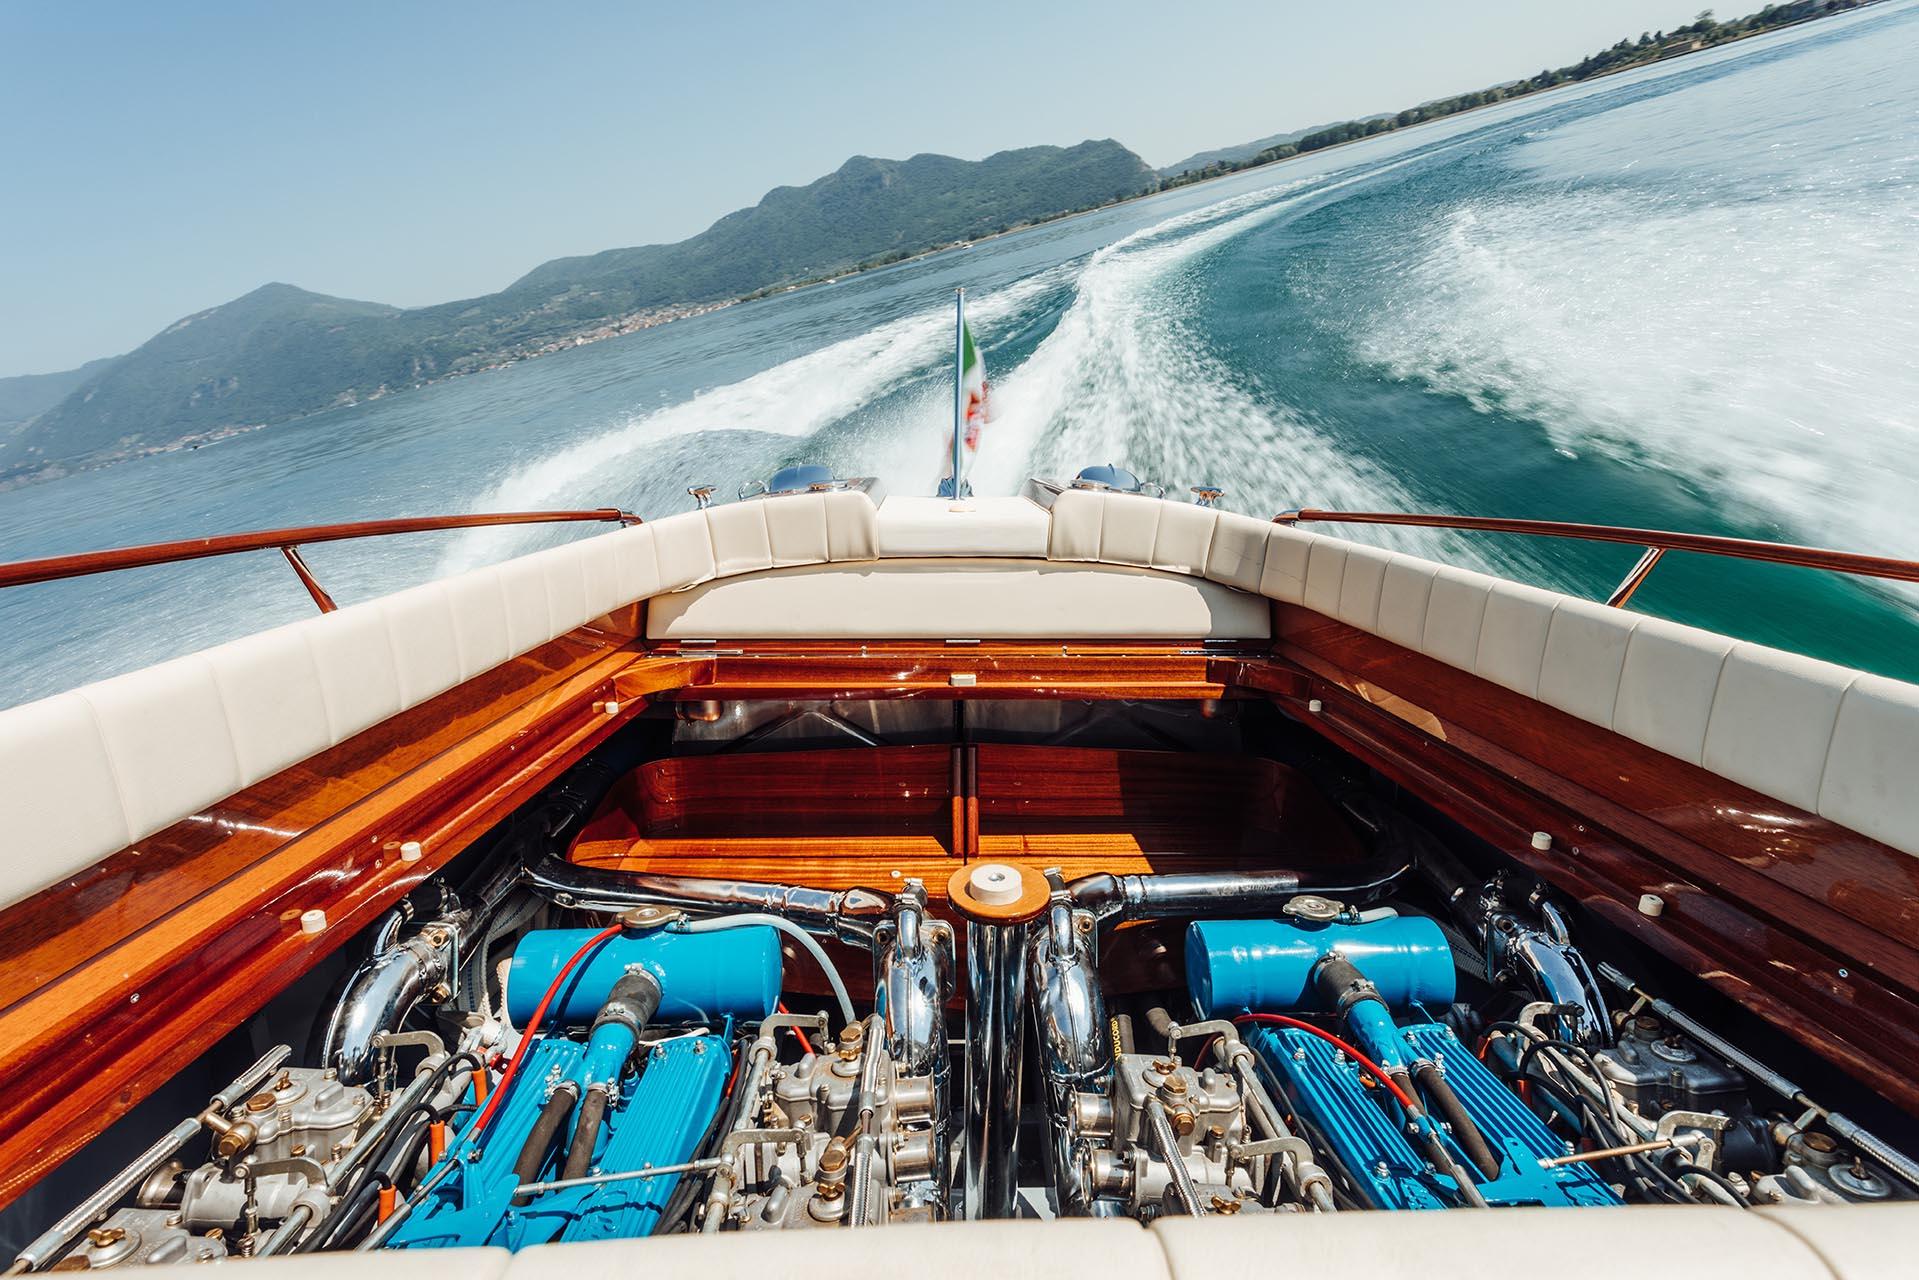 Riva Aquarama with Lamborghini V12 engine sails back